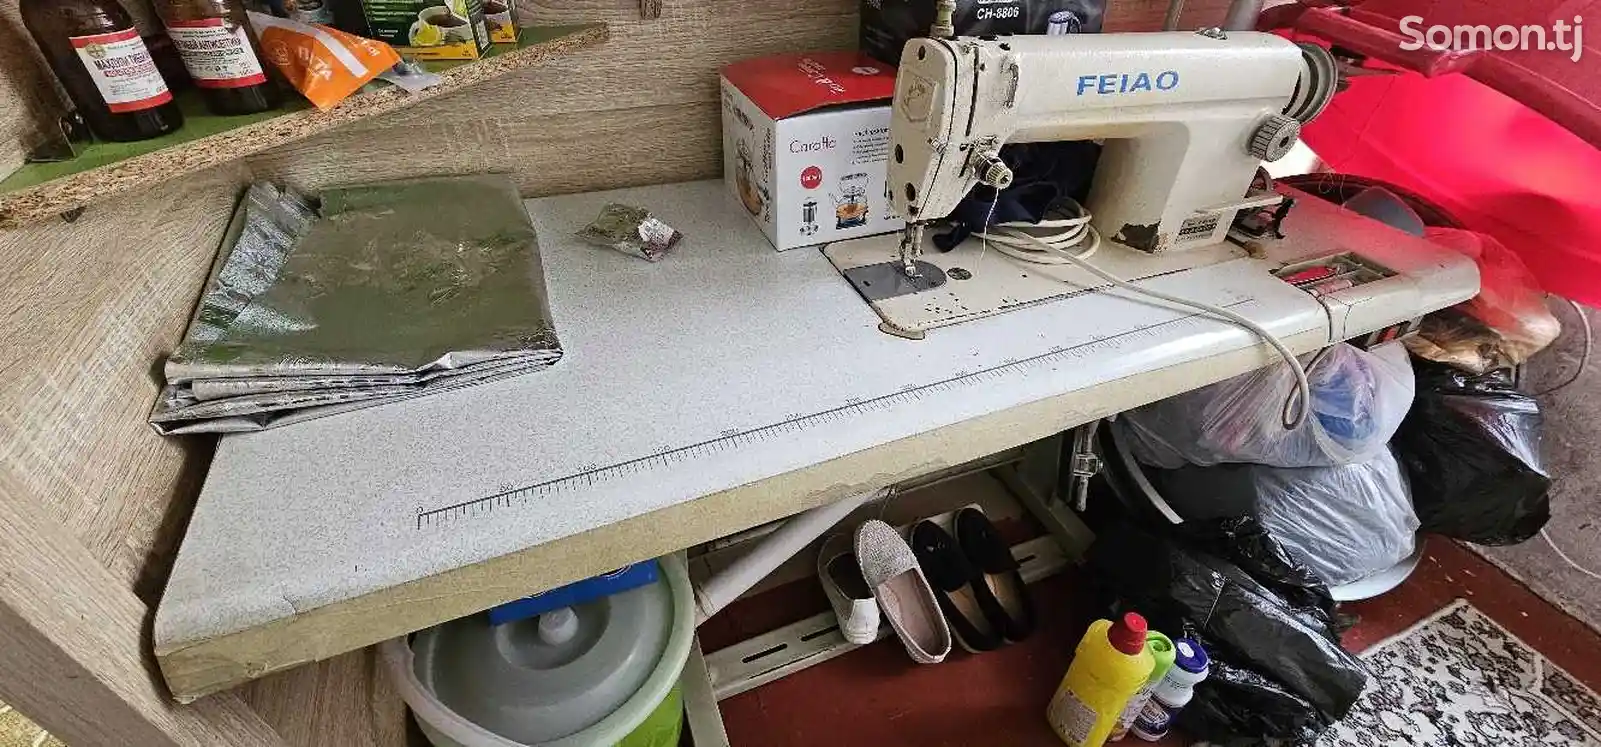 Швейная машина Feiao